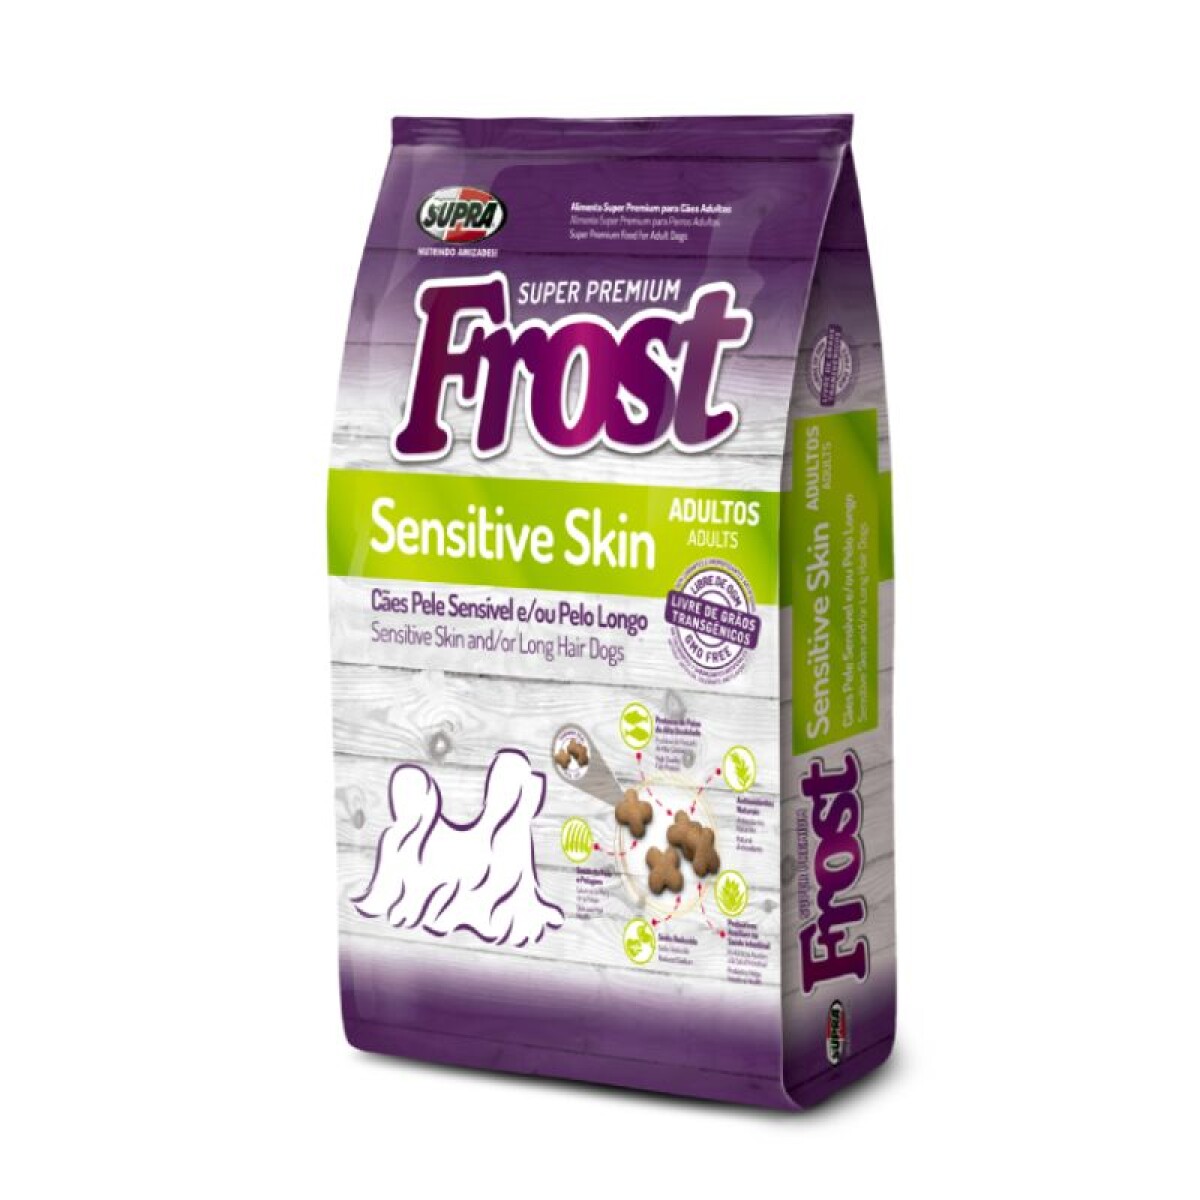 FROST SENSITIVE SKIN 2.5KG - Frost Sensitive Skin 2.5kg 